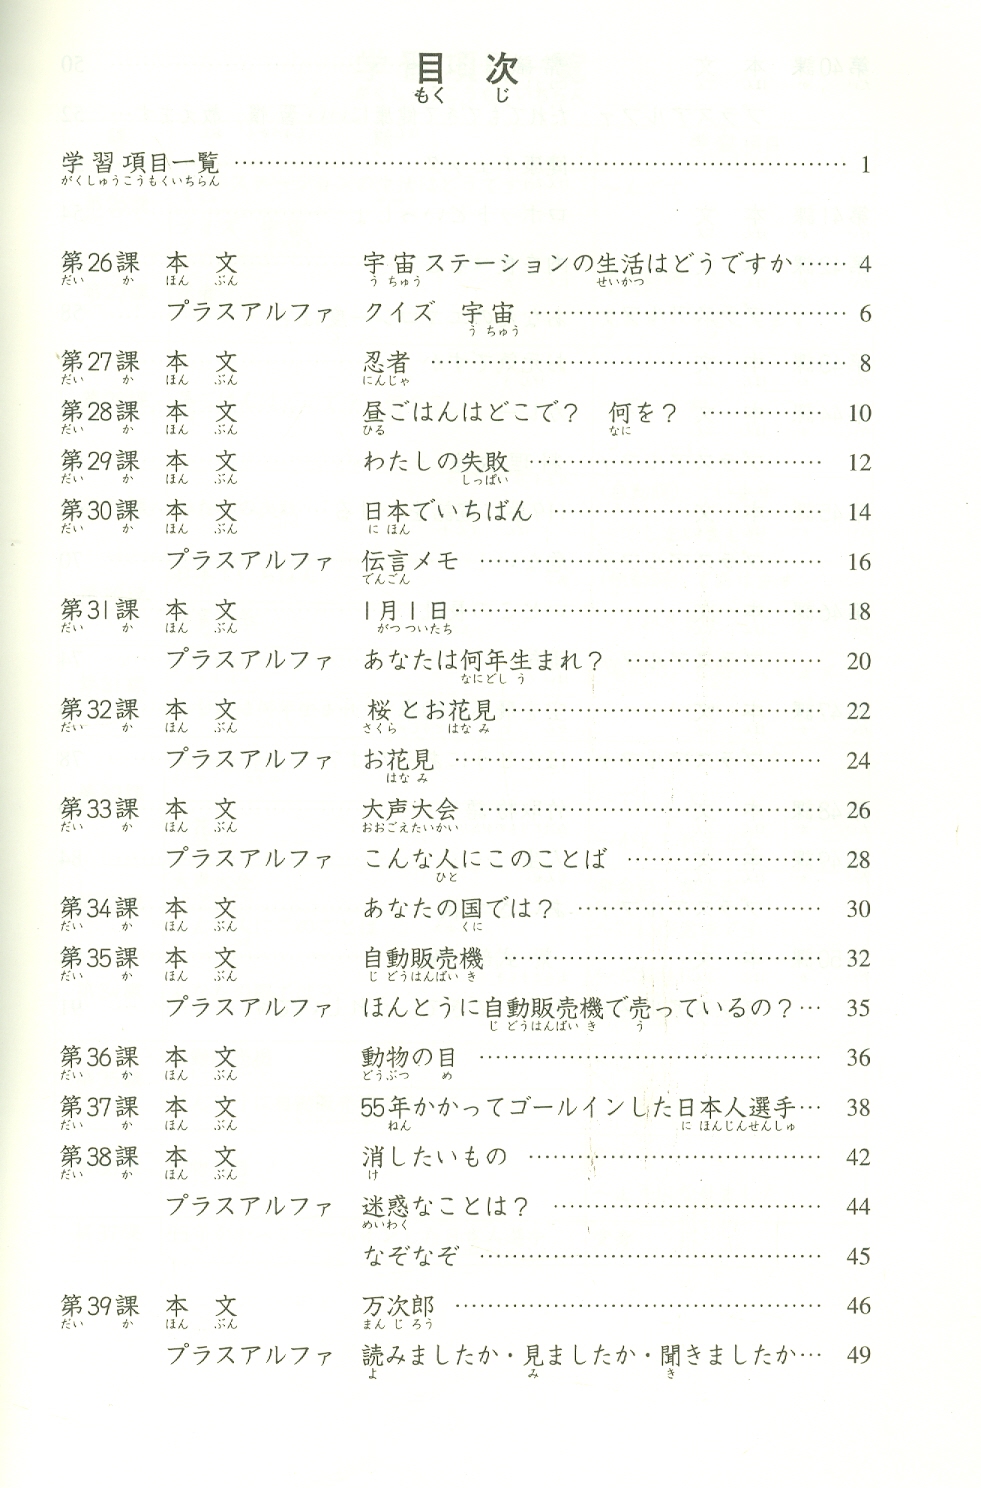 Tiếng Nhật Cho Mọi Người - Sơ Cấp 2 - 25 Bài Đọc Hiểu Trình Độ Sơ Cấp (Bản Mới) - Bản in năm 2023